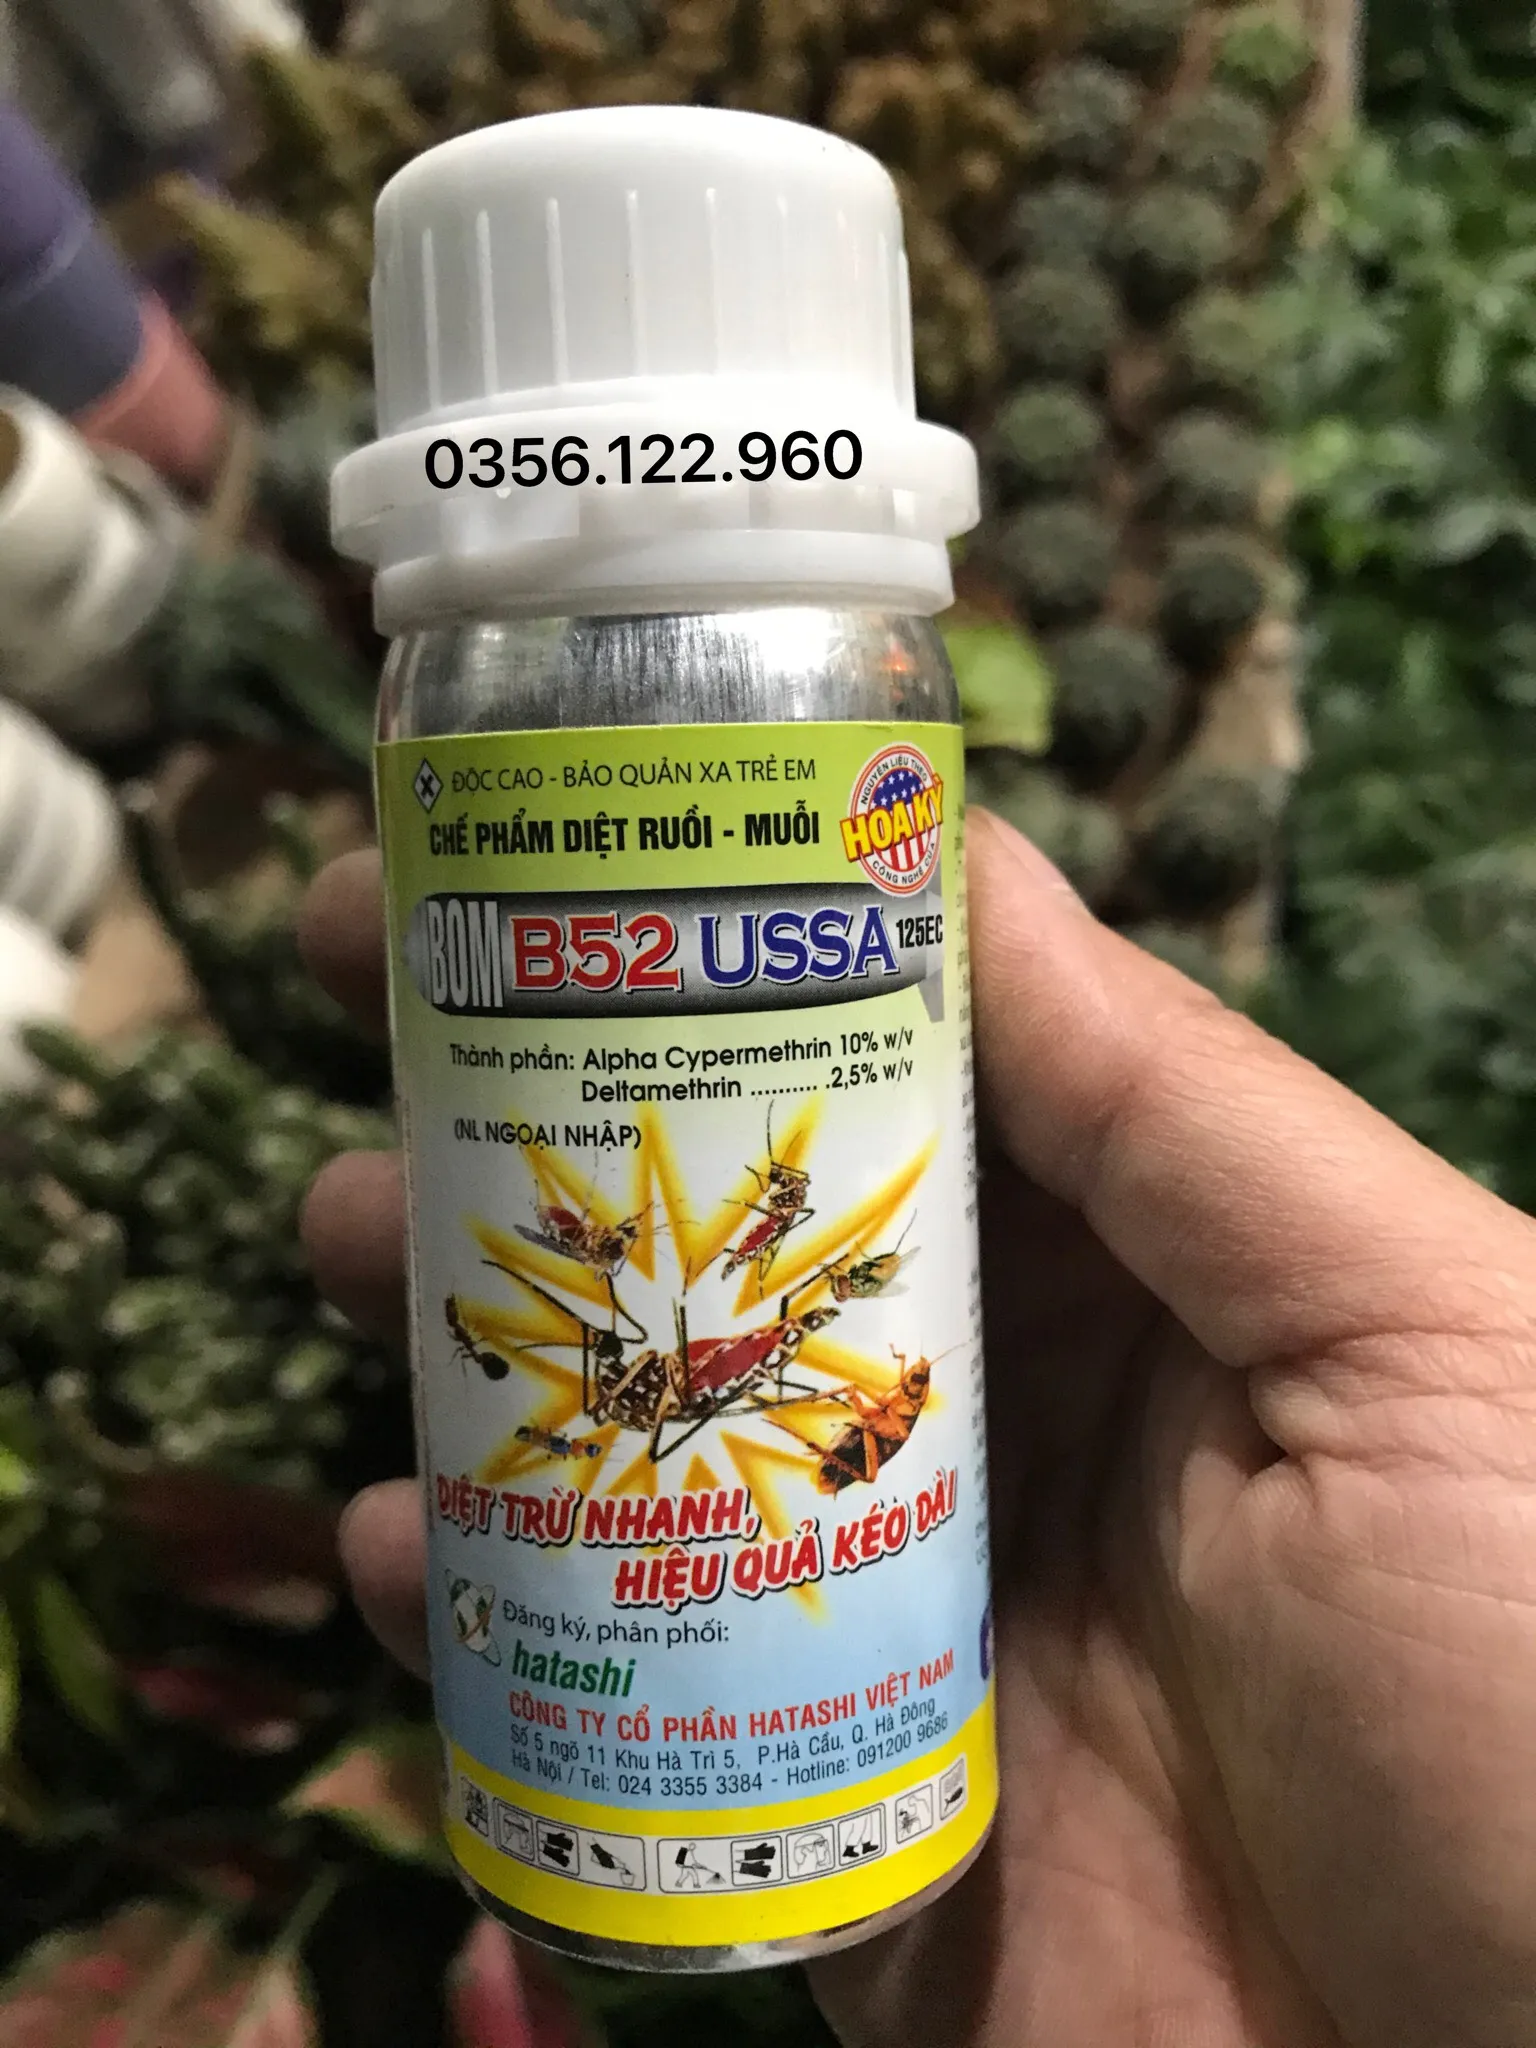 [Rẻ vô địch] Chai Diệt ruồi Muỗi y tế BOM B52 USA diệt muỗi tận gốc an toàn hiệu quả thuốc diệt muỗi nhập